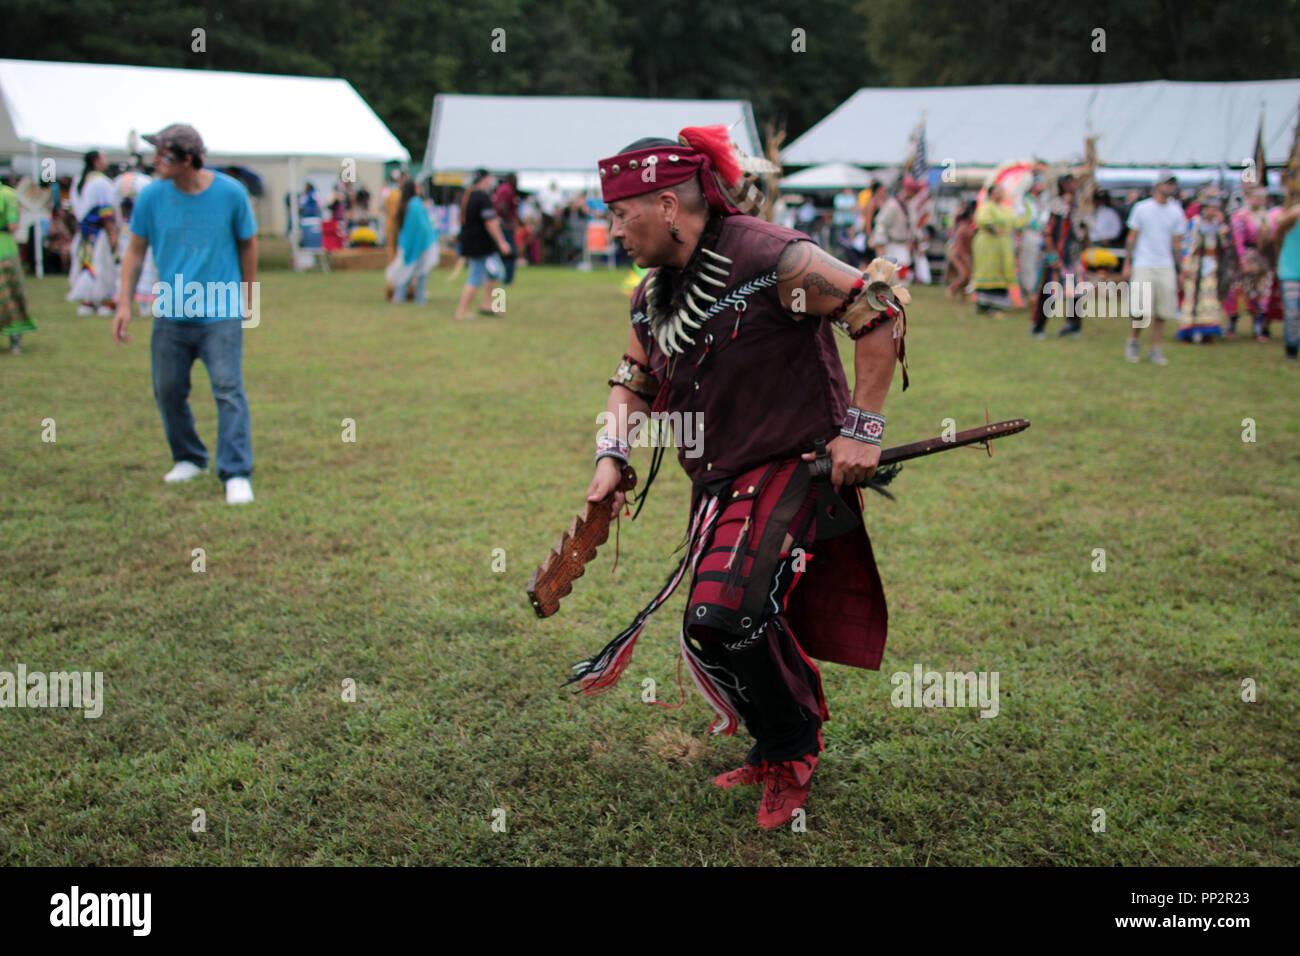 Native American Darsteller in traditionellen Kostümen tanzen am jährlichen  Indianerstamm Herbstfest und Pow Wow, Virginia, USA gekleidet  Stockfotografie - Alamy